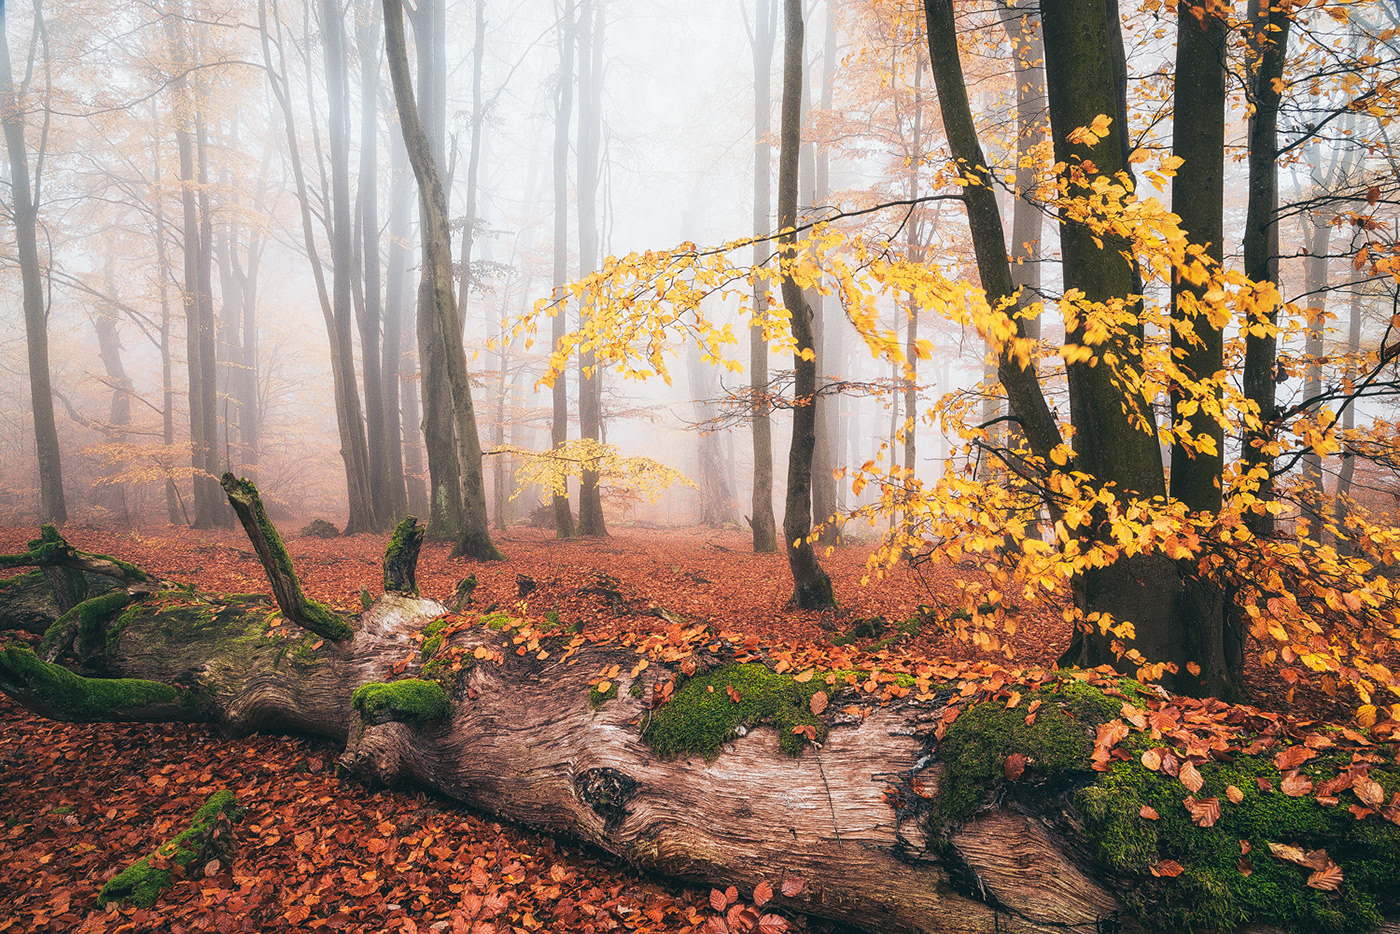 forest wood trees fog mist mood Nature autumn Fall